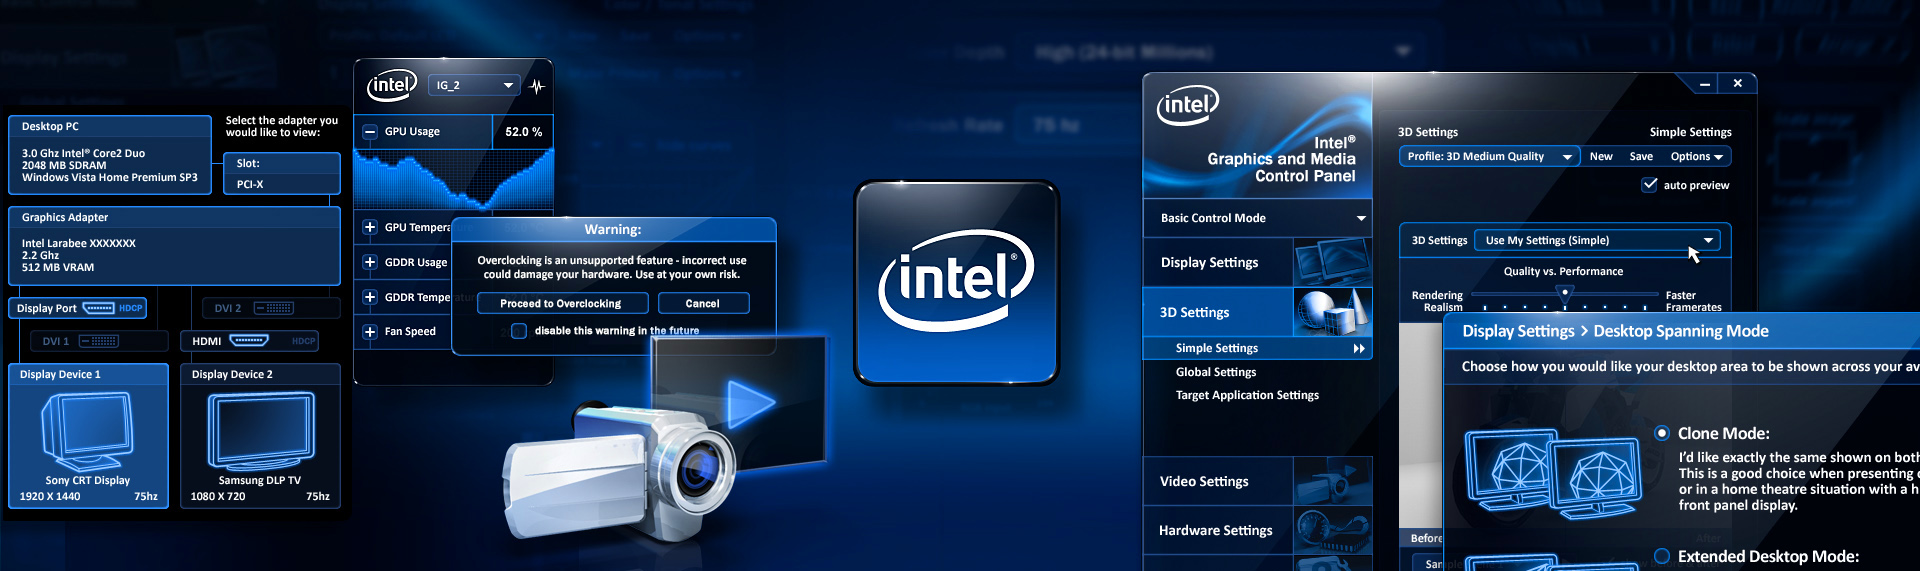 Intel programs